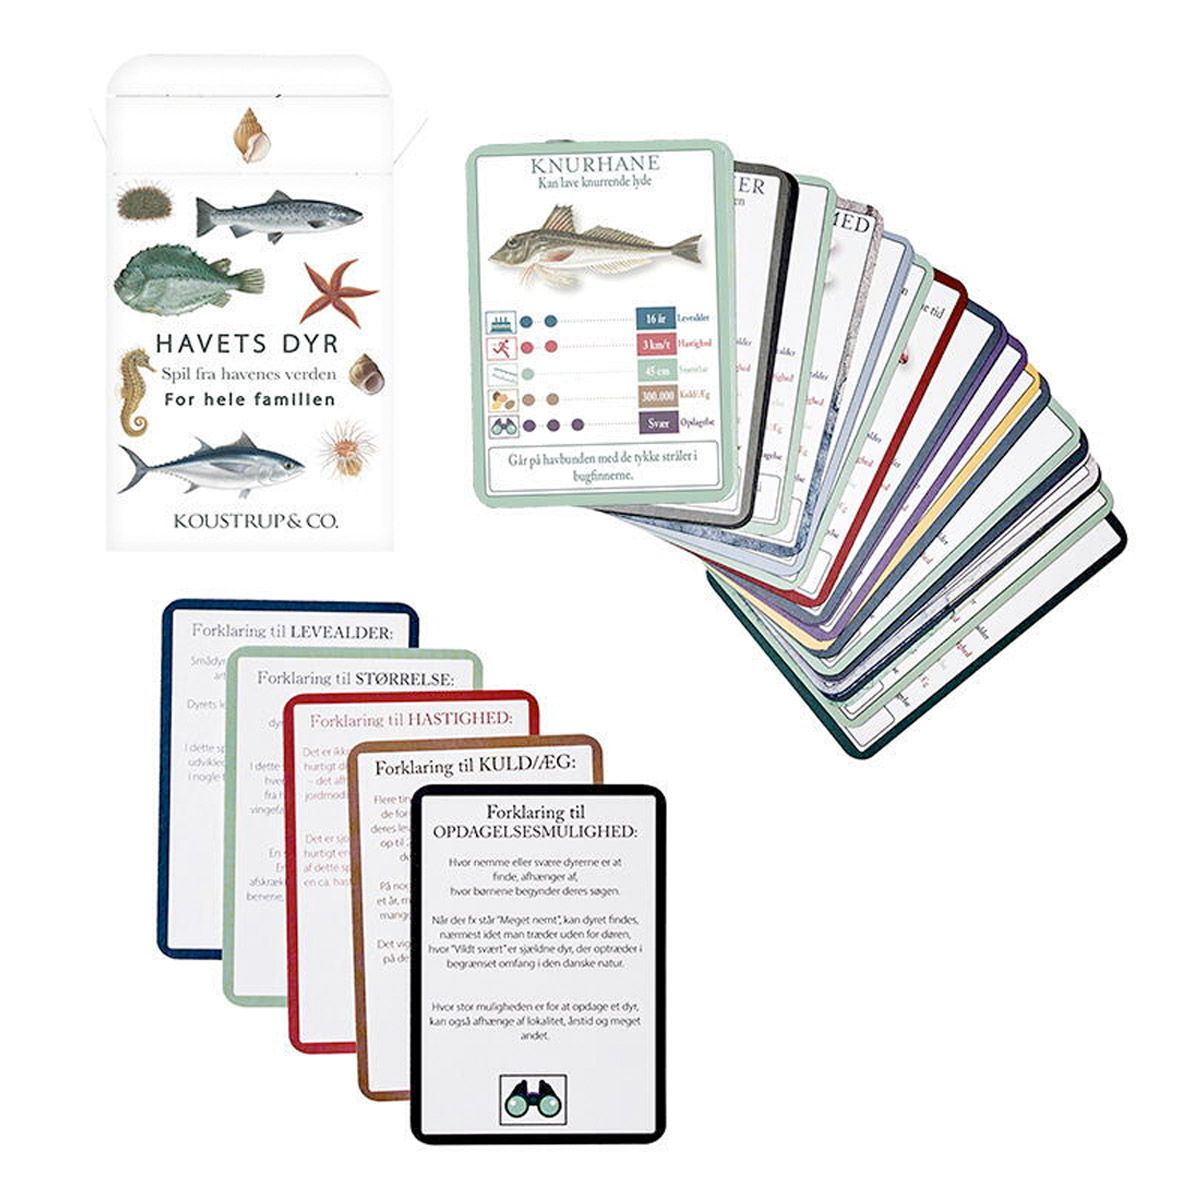 Farverigt kortspil med havets dyr flot illustreret. Spillet er en nytænkt version af spillet 